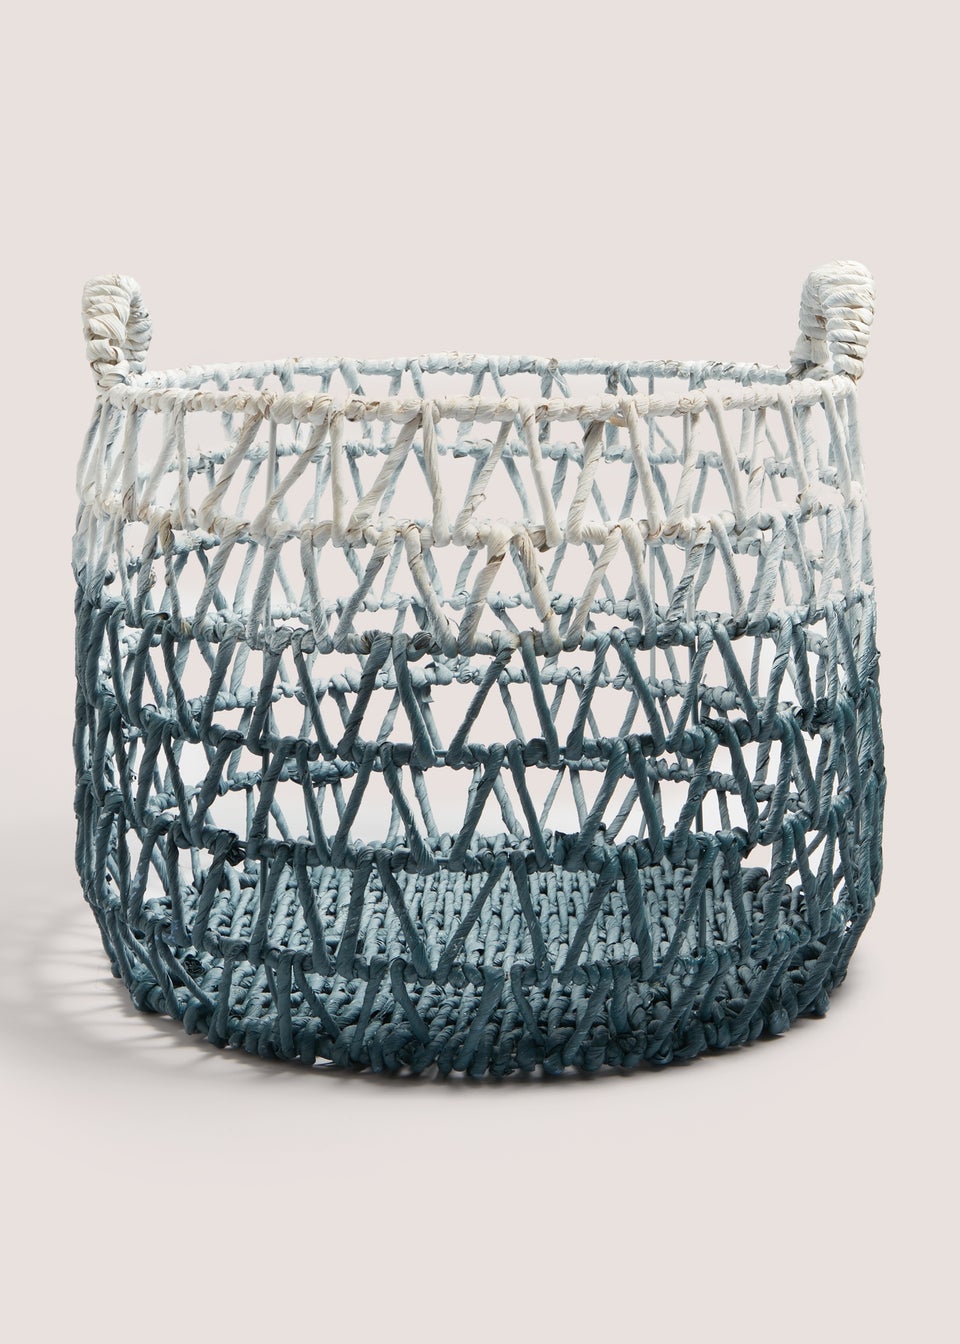 Ombre Woven Basket (71cm x 40cm x 41cm)